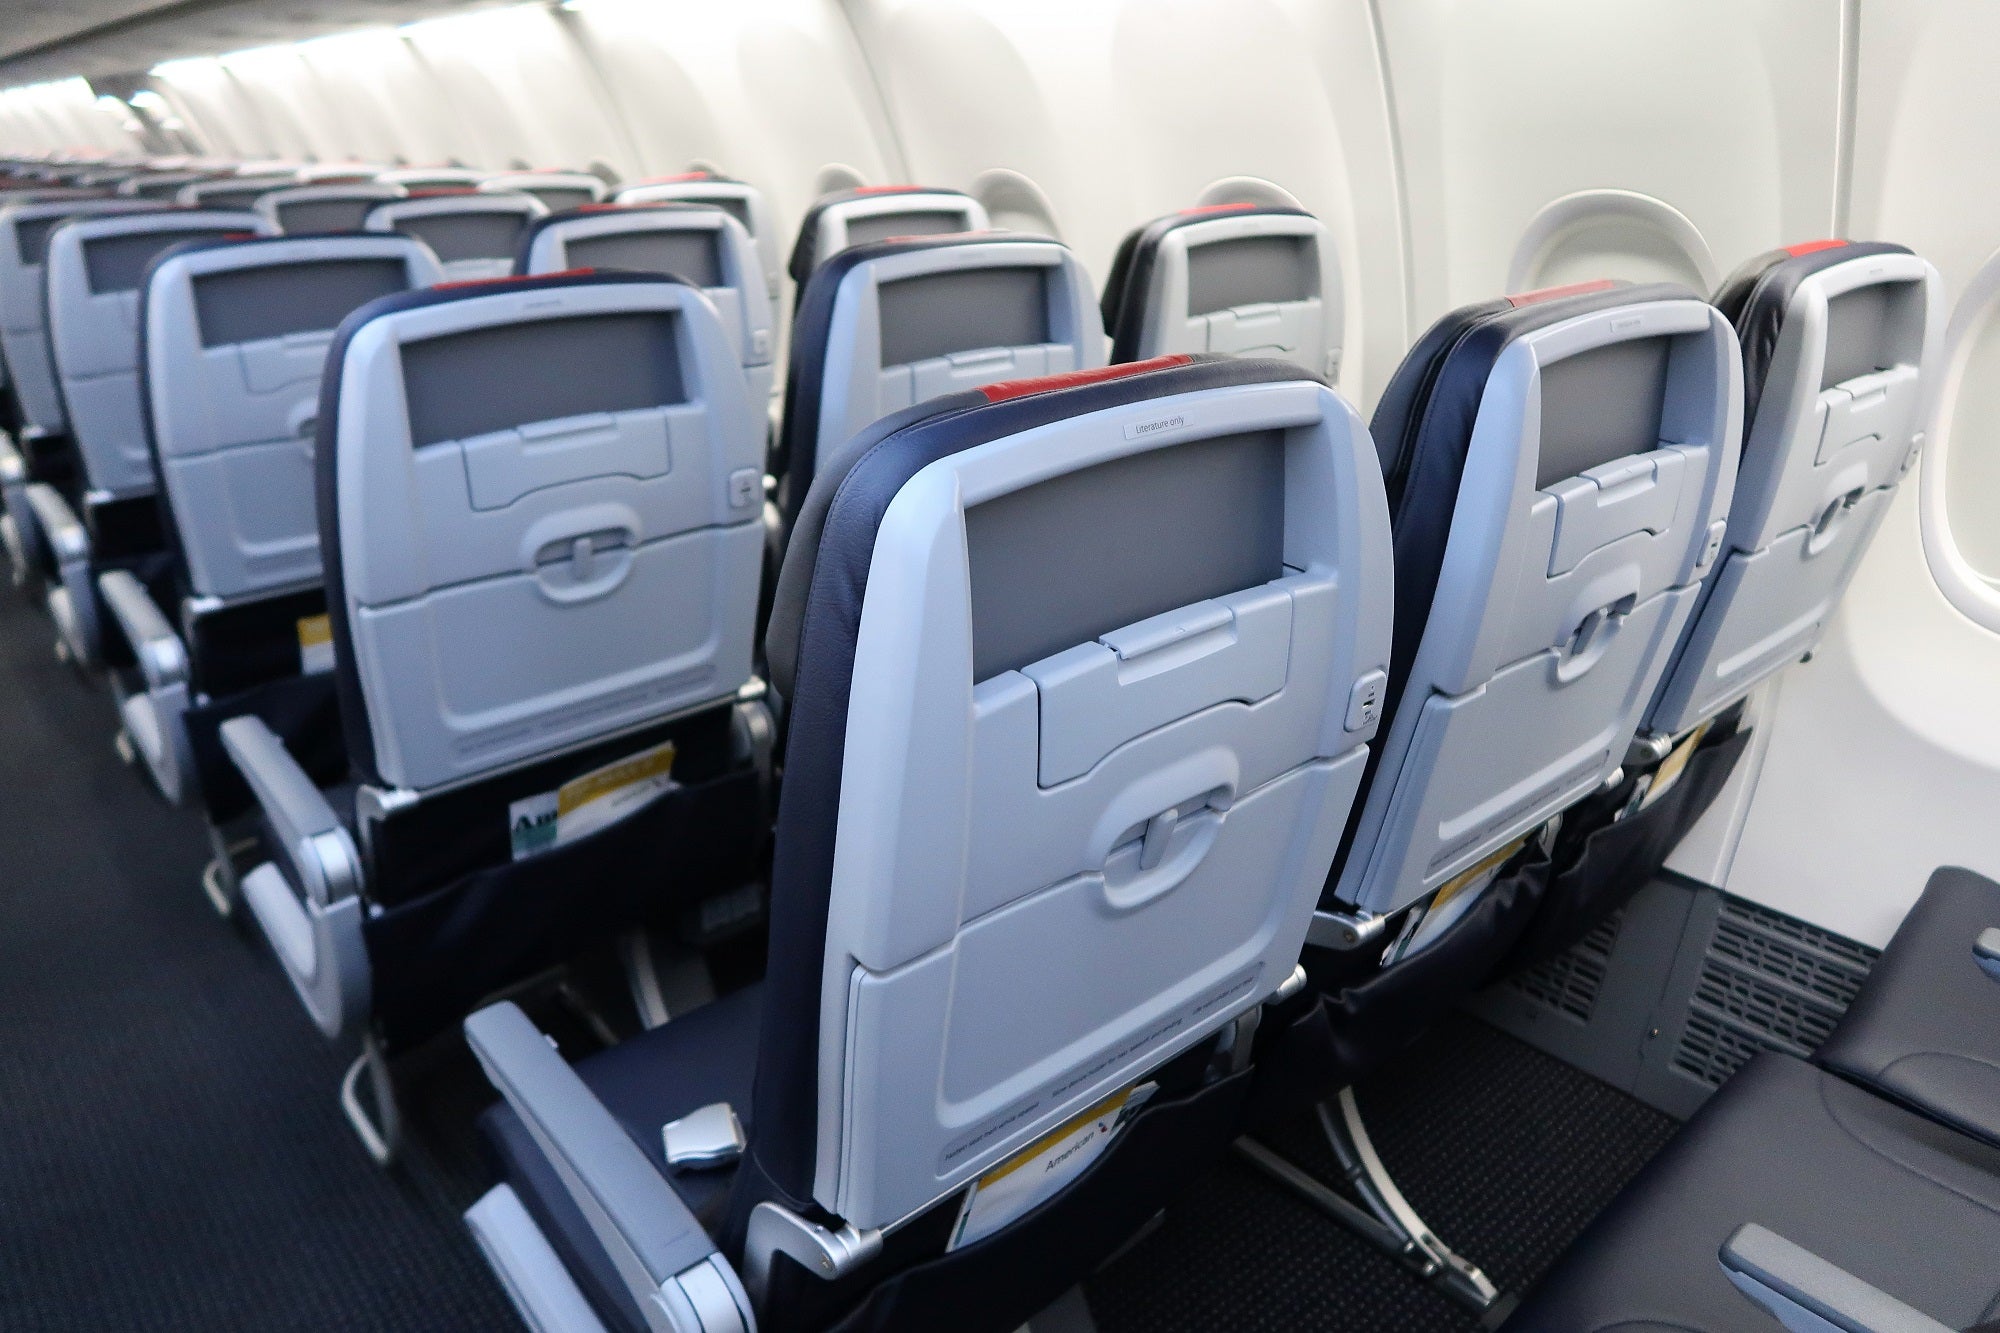 AA 737MAX economy seatback tablet holders